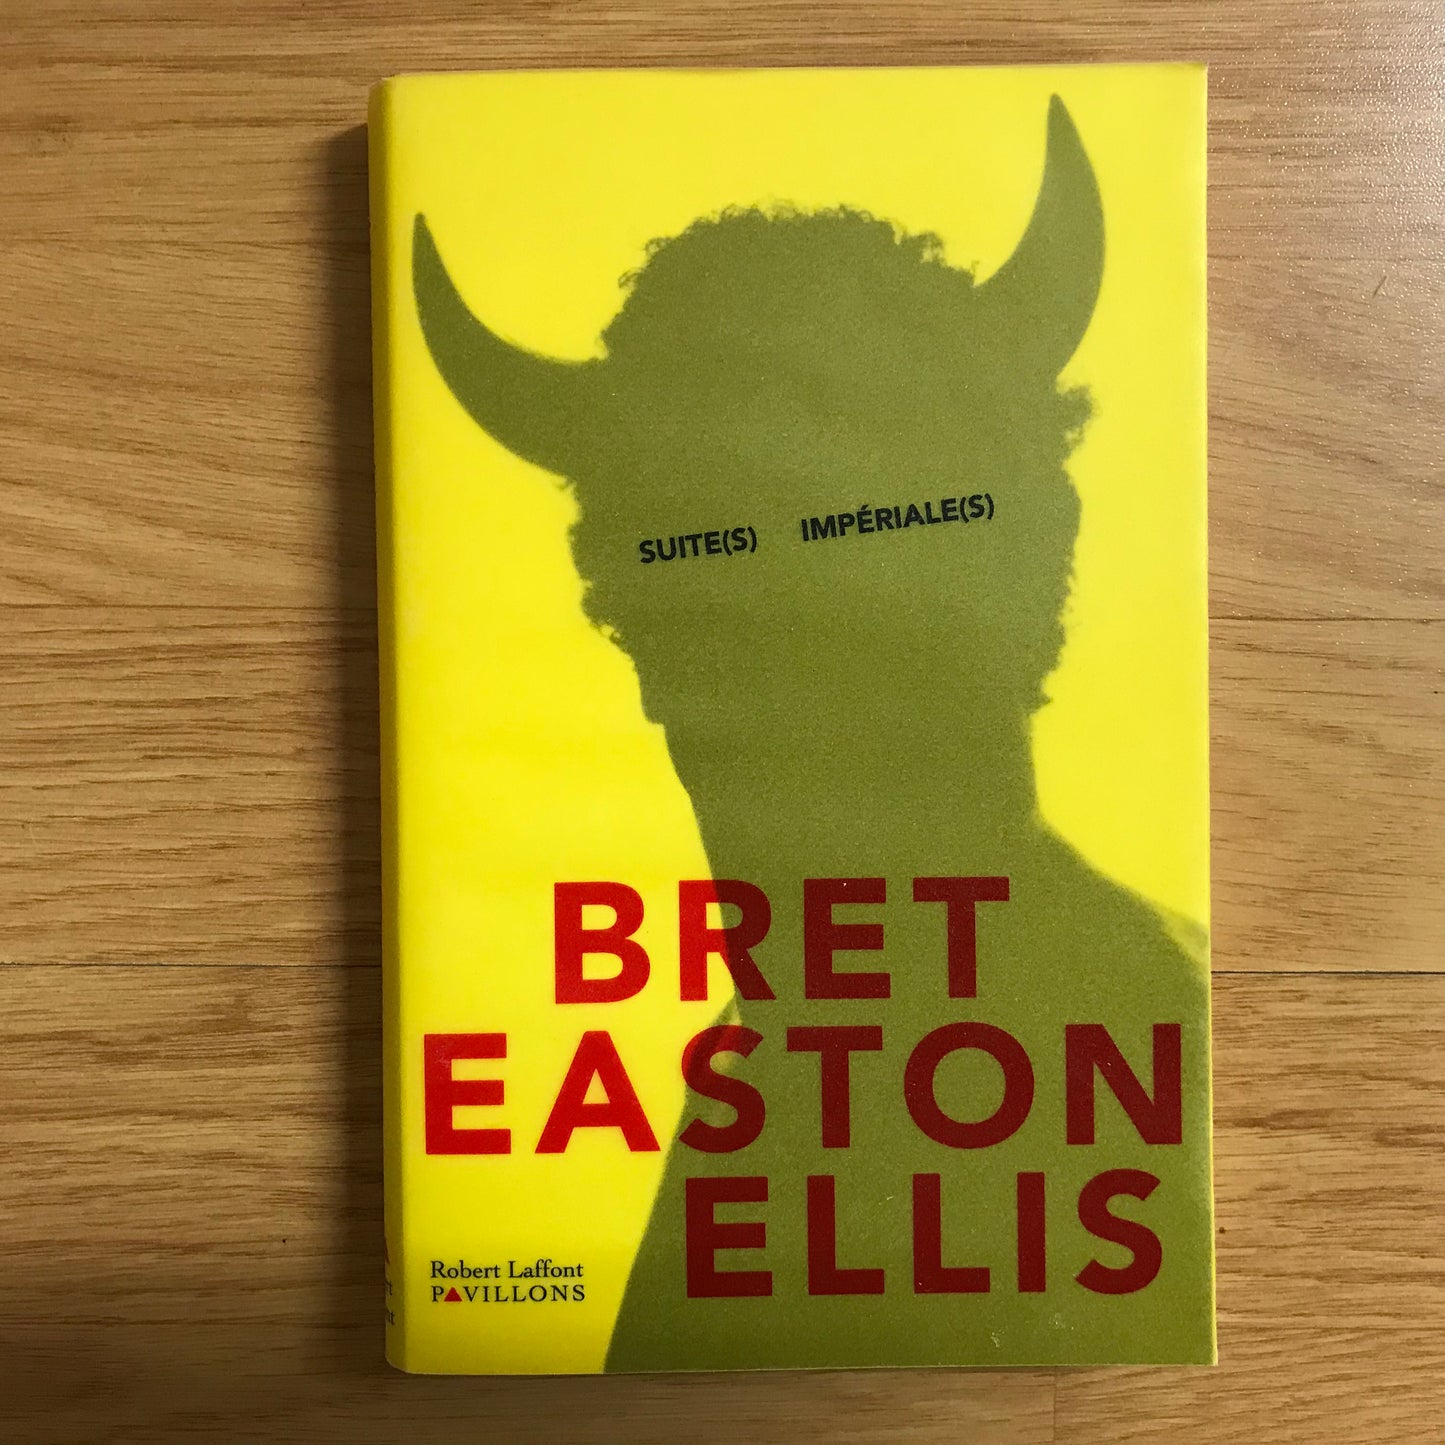 Easton Ellis, Bret - Suite(s) impériale(s)